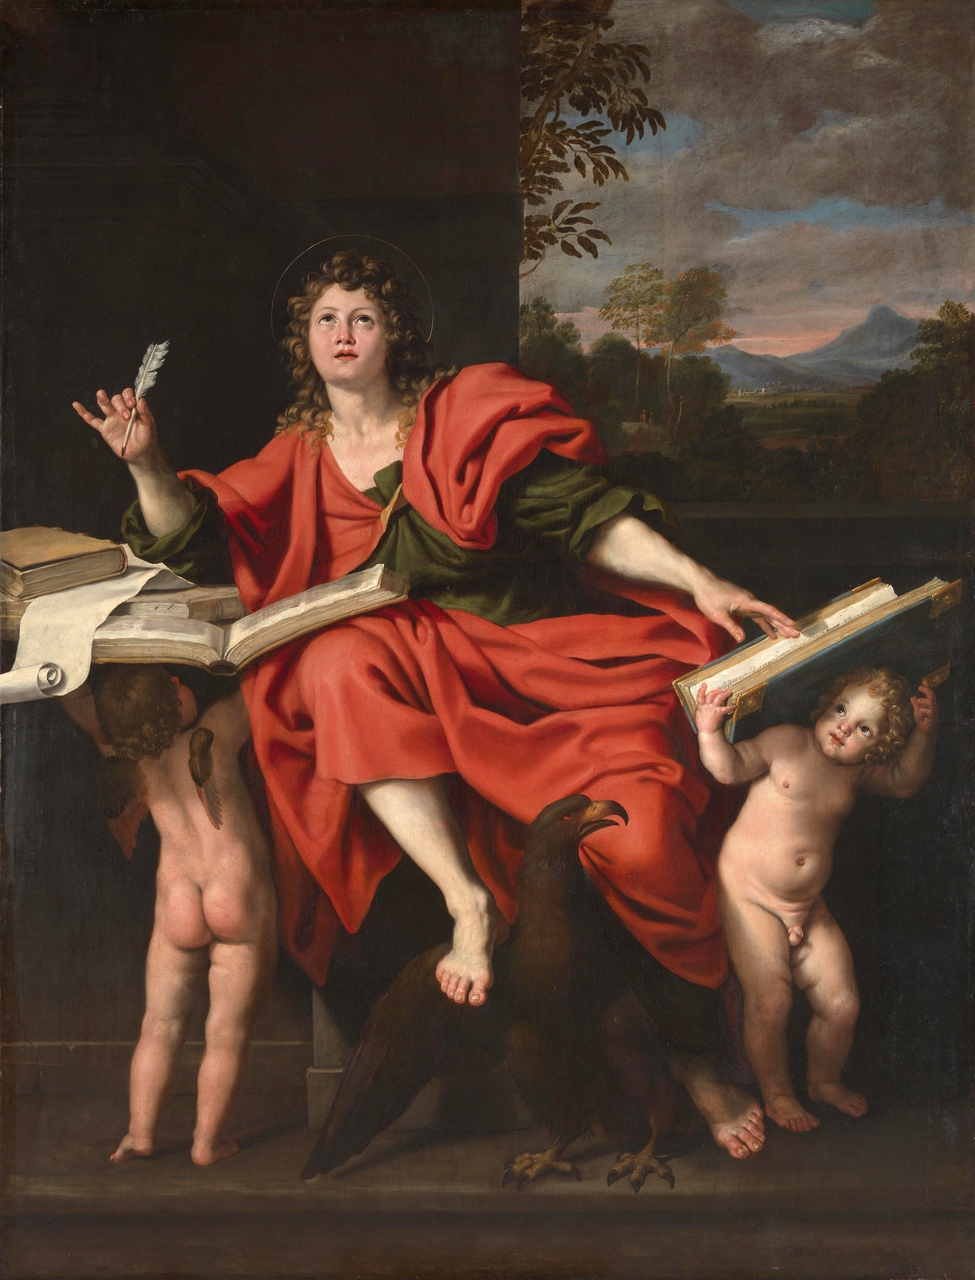 Intelligenza Artificiale: San Giovanni Evangelista, raffigurato come un giovane accompagnato dal suo simbolo tradizionale, l'aquila e due putti, è un dipinto del 1620 del pittore barocco italiano Domenichino.